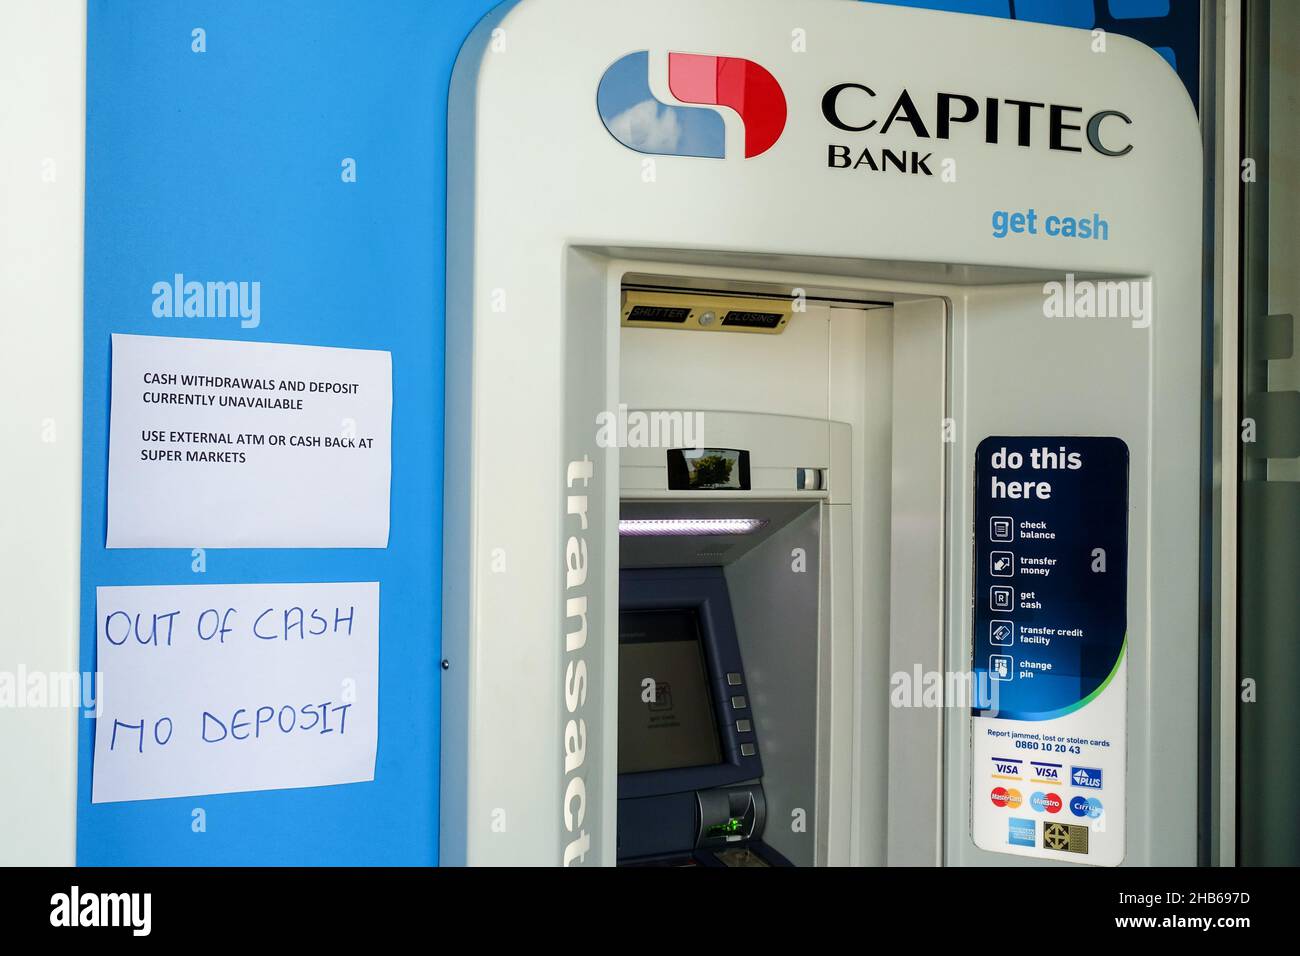 Cajero automático del banco Capitec con signo manuscrito de agotamiento de efectivo, Sudáfrica Foto de stock